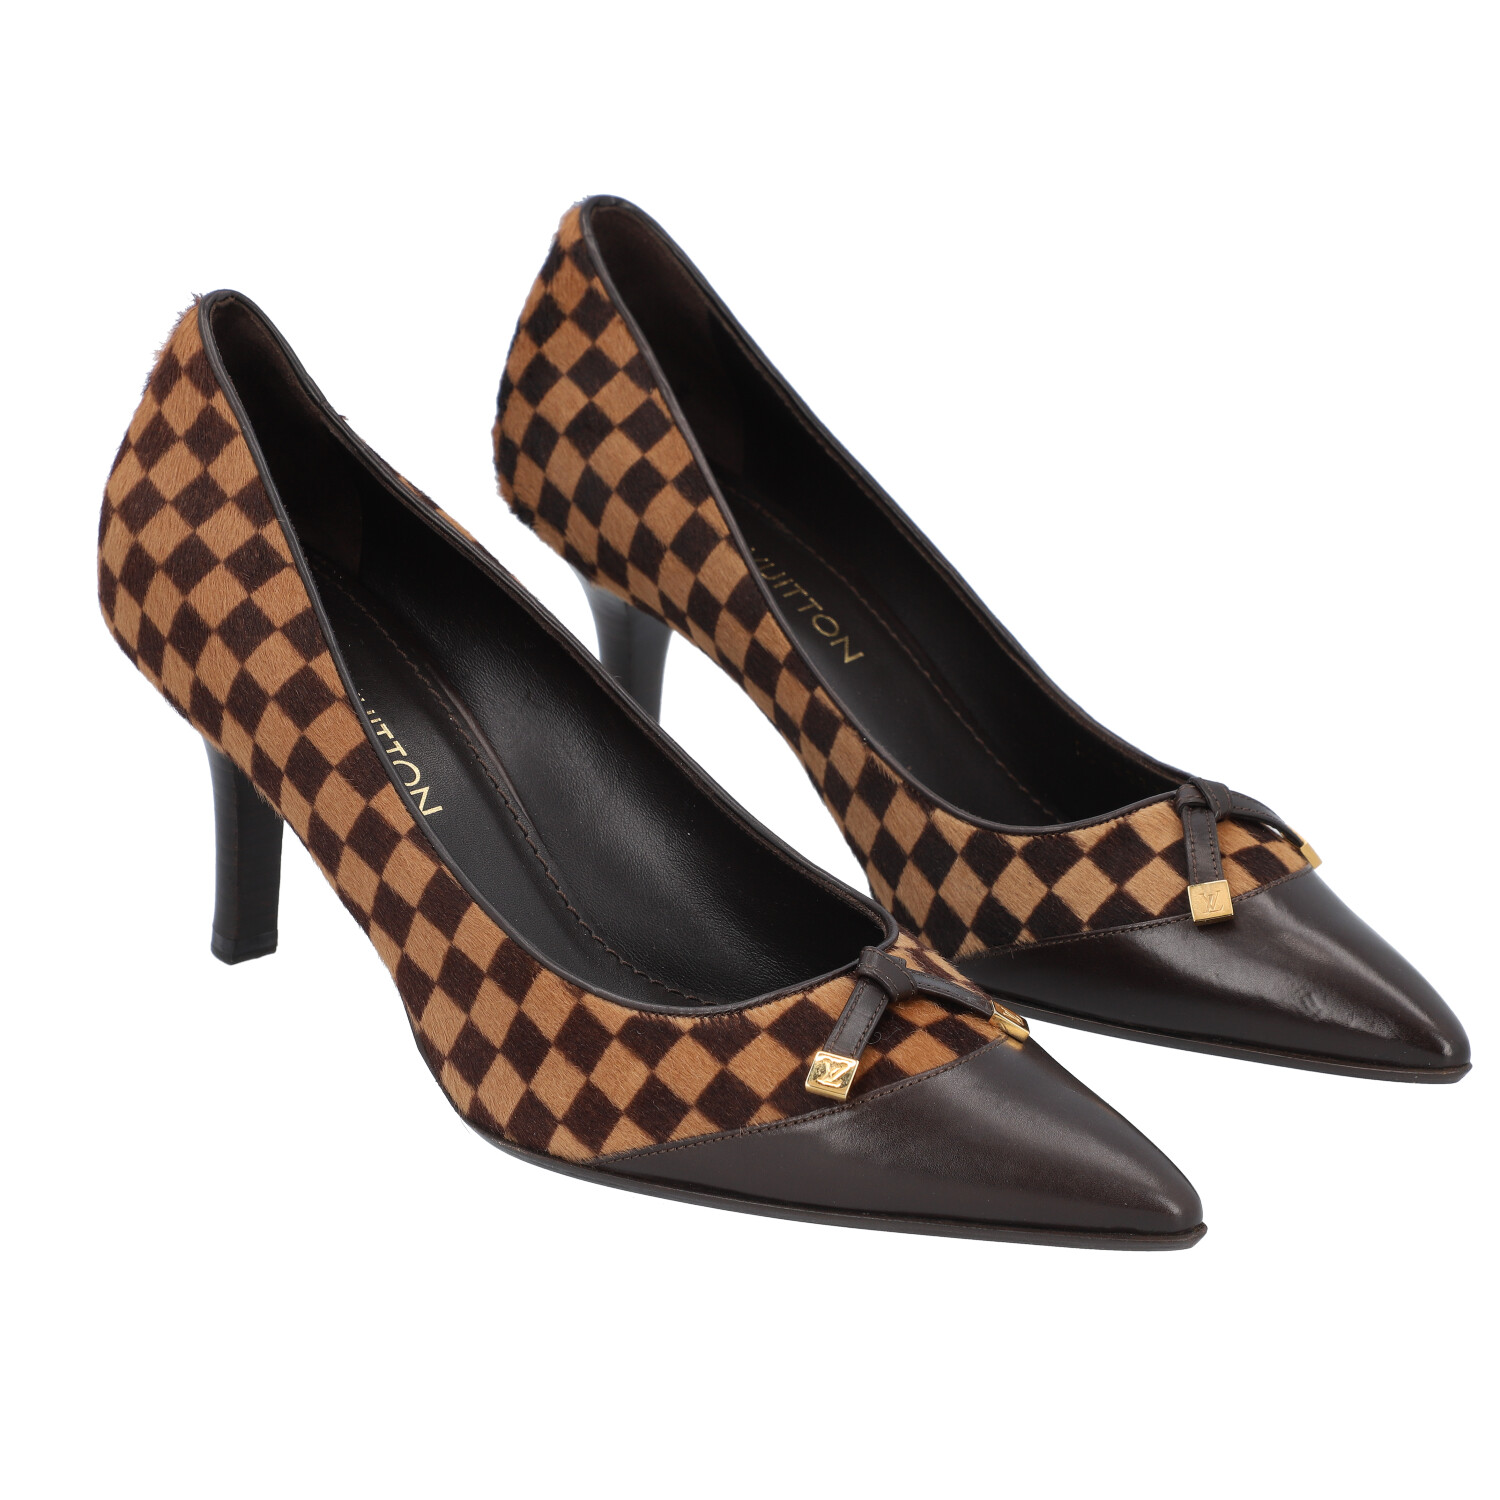 Louis Vuitton Schuhe im Pump Stil für Damen online kaufen